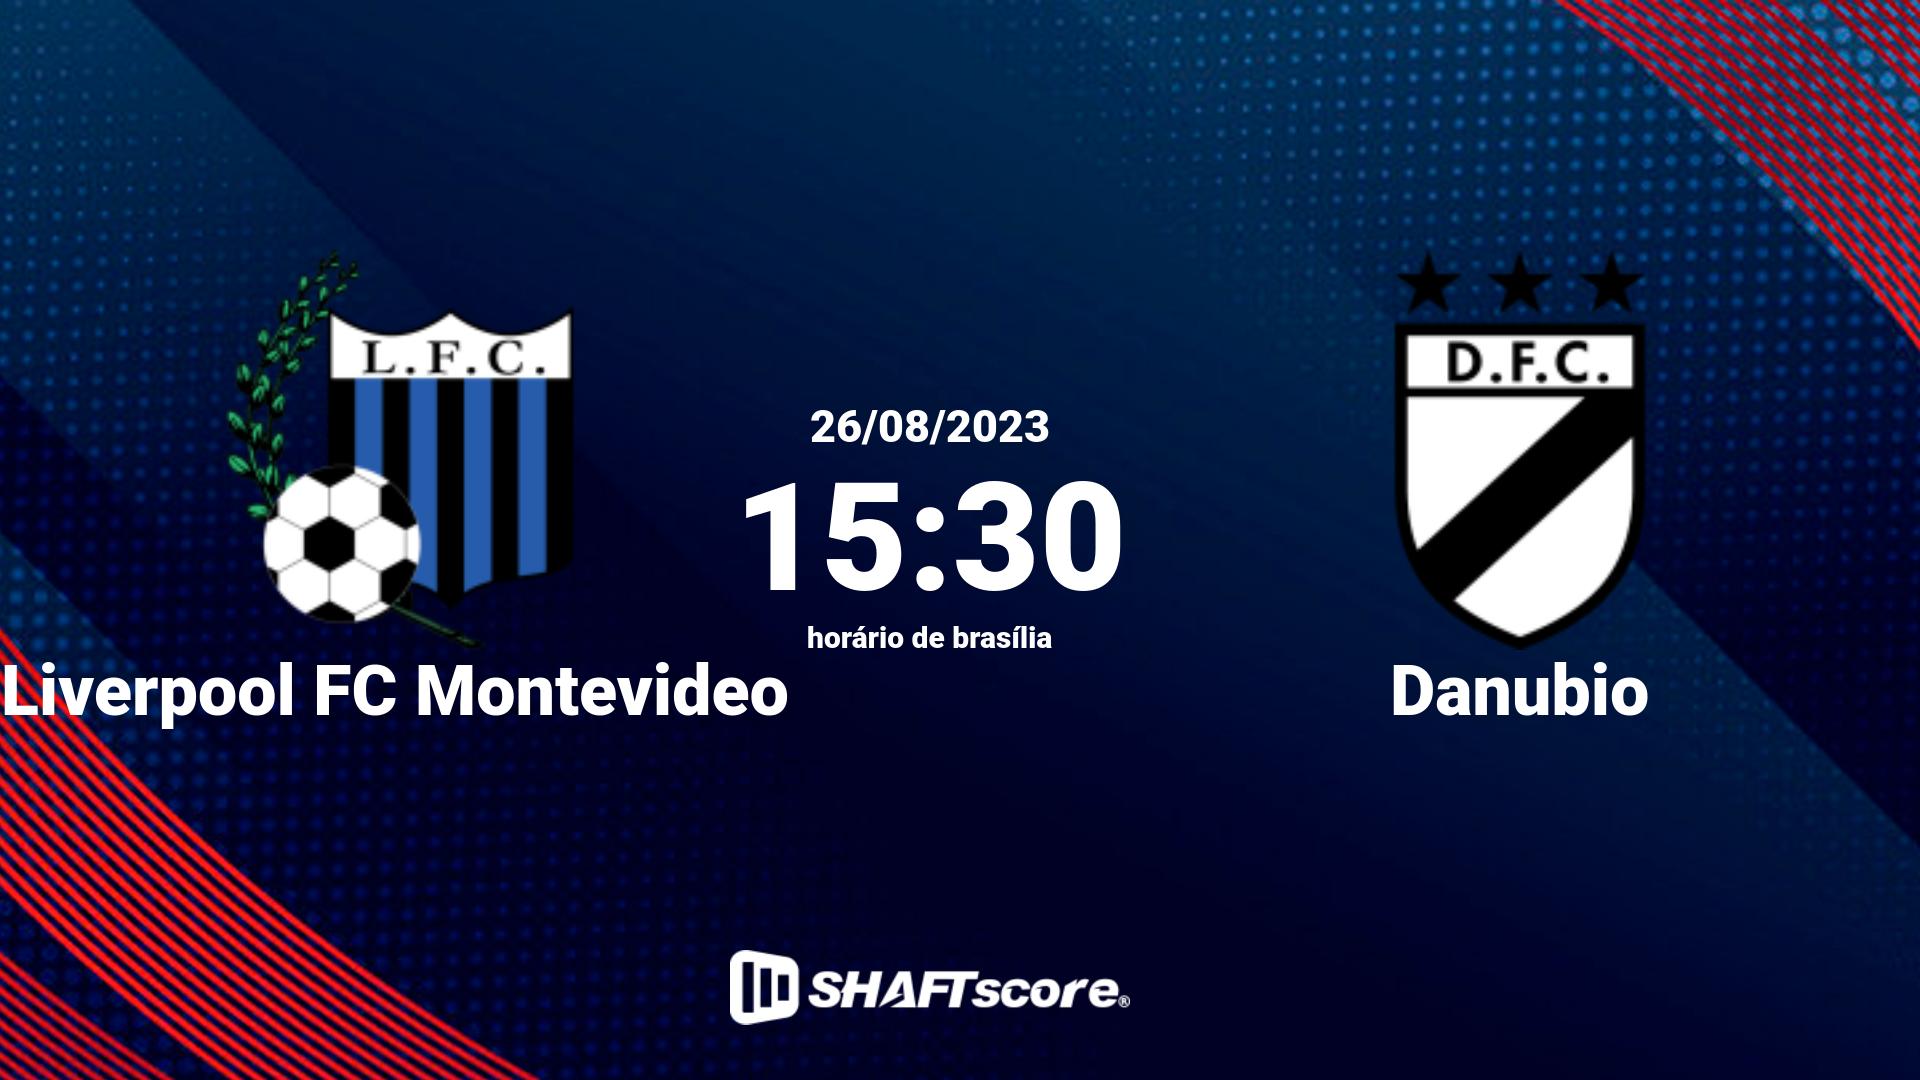 Estatísticas do jogo Liverpool FC Montevideo vs Danubio 26.08 15:30